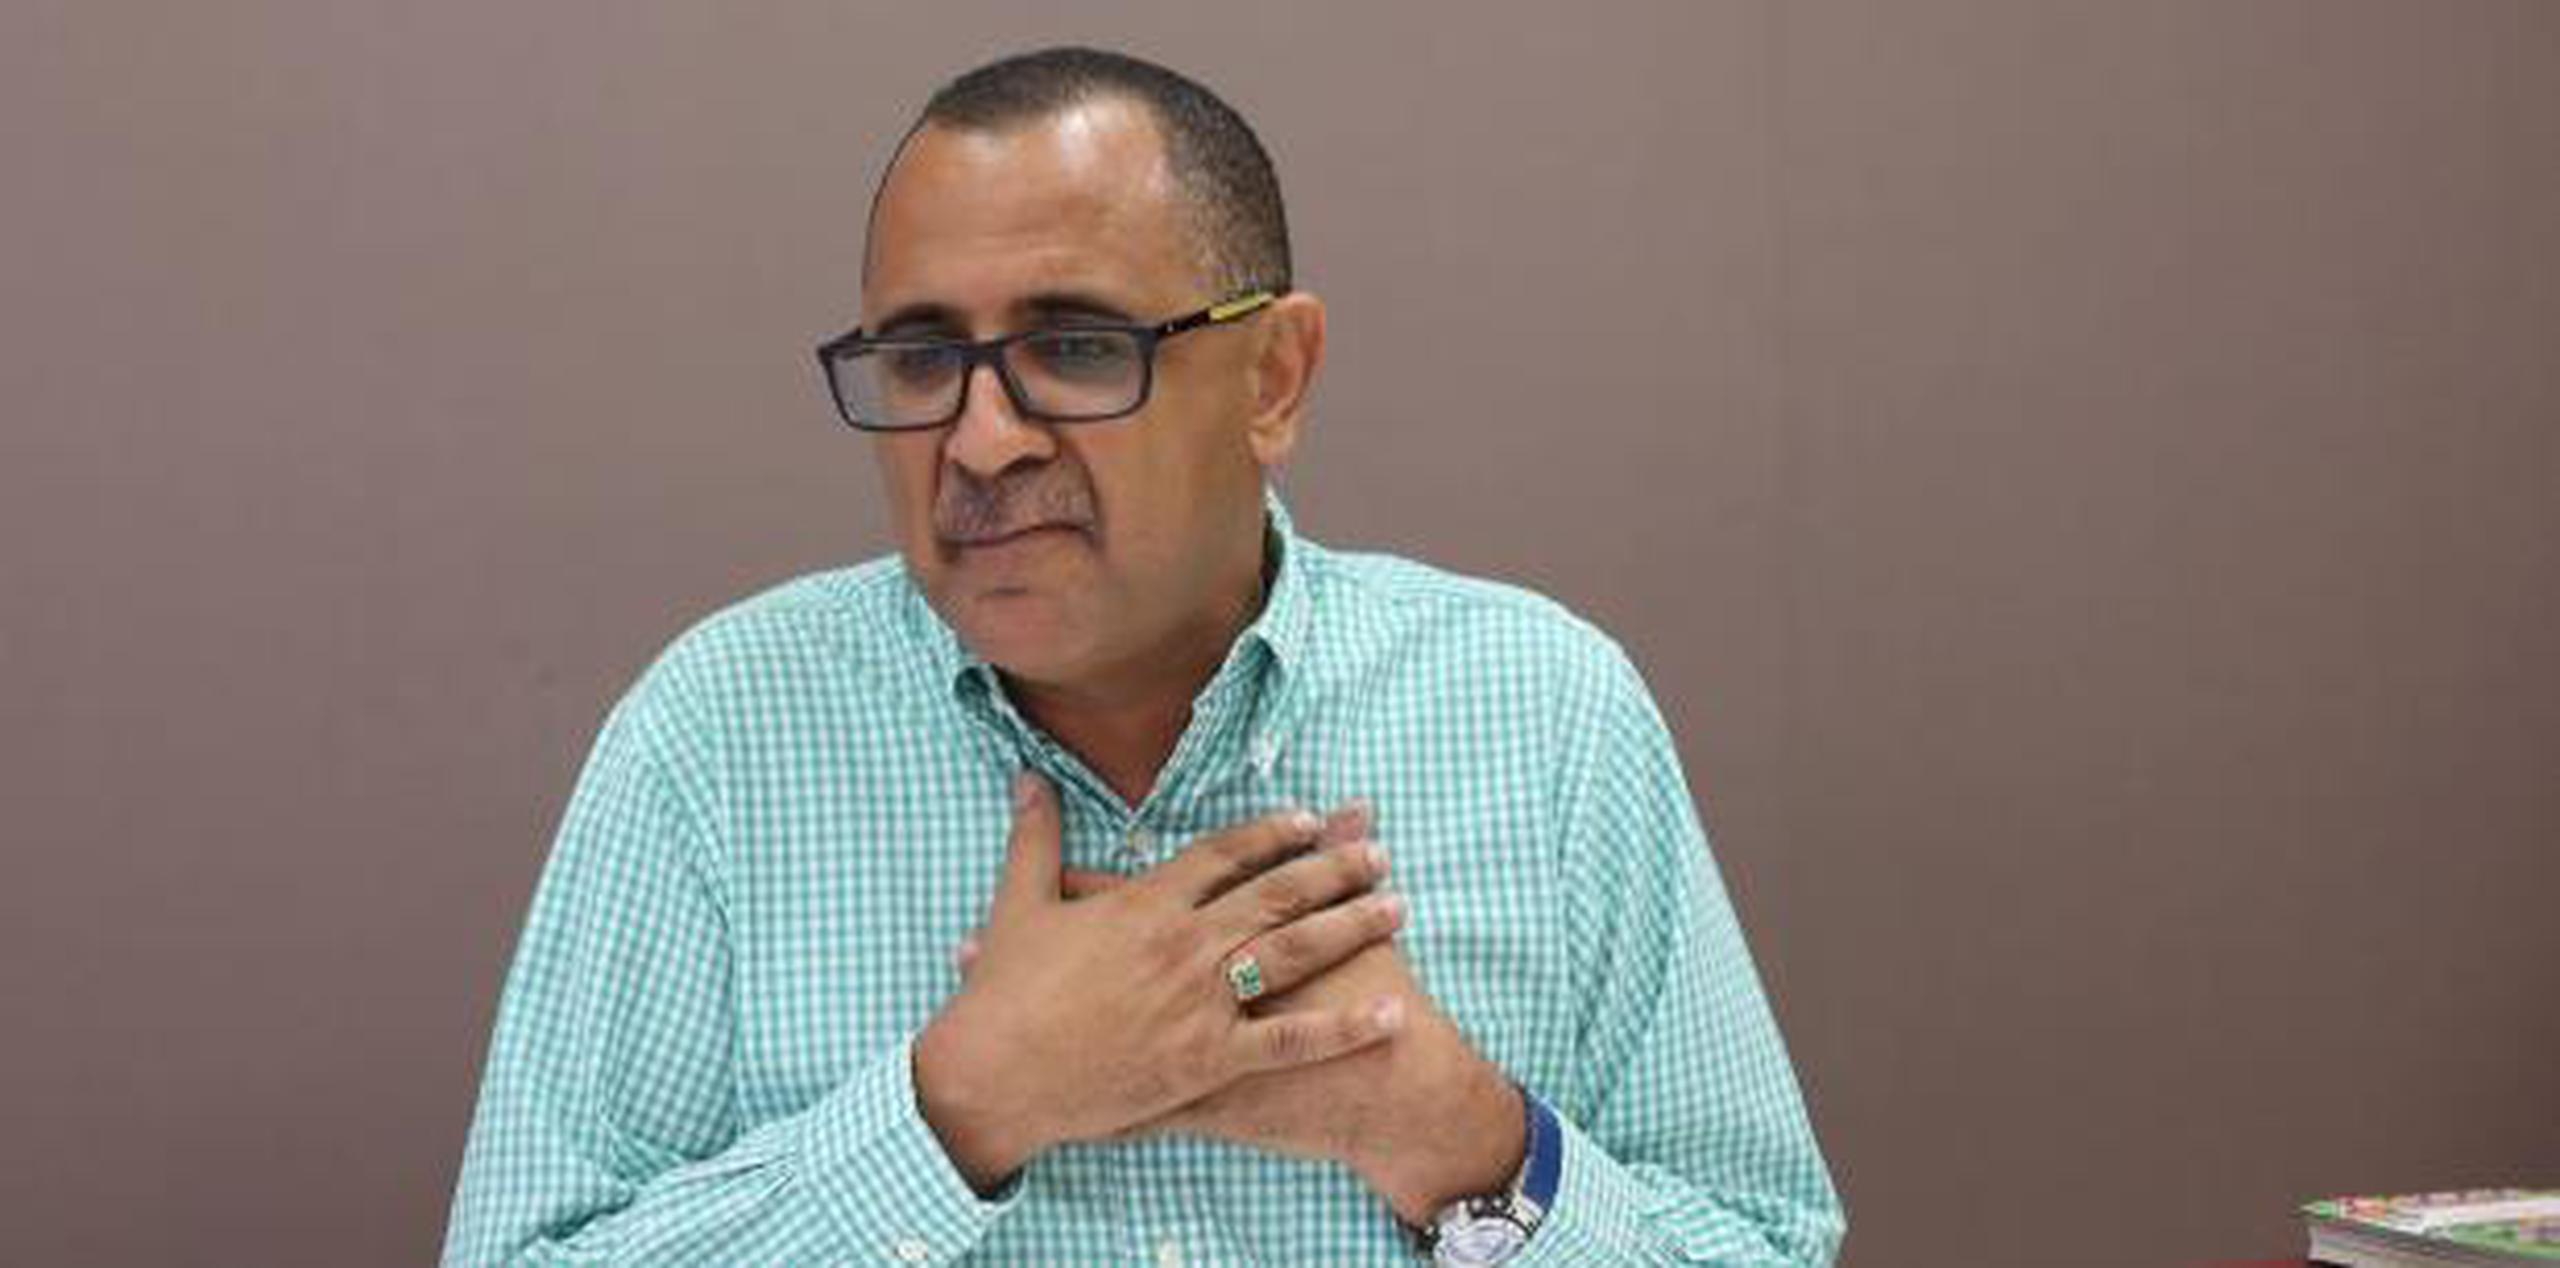 Nazario Quiñones dijo que fue recibido en el hemiciclo con “mucho respeto” por sus compañeros senadores de mayoría y minoría. (vanessa.serra@gfrmedia.com)